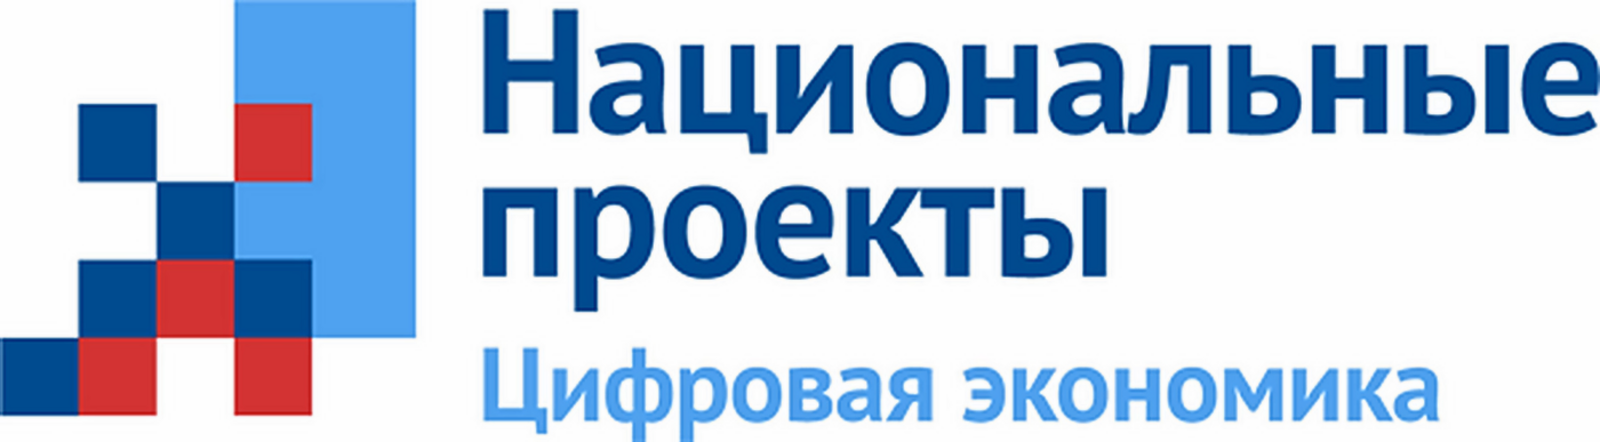 Для жителей Башкортостана открыт набор по проекту «Цифровые профессии»